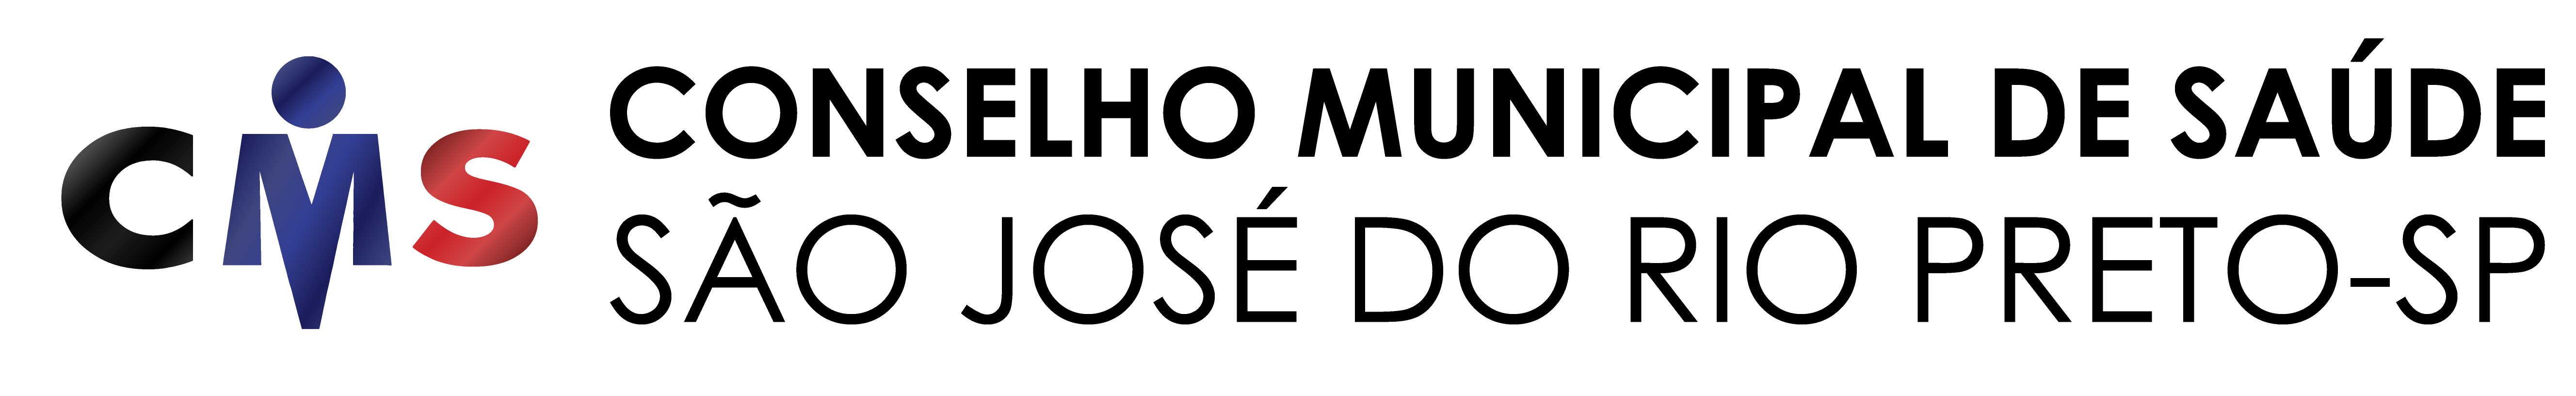 Logo CMS (FHD2)-02